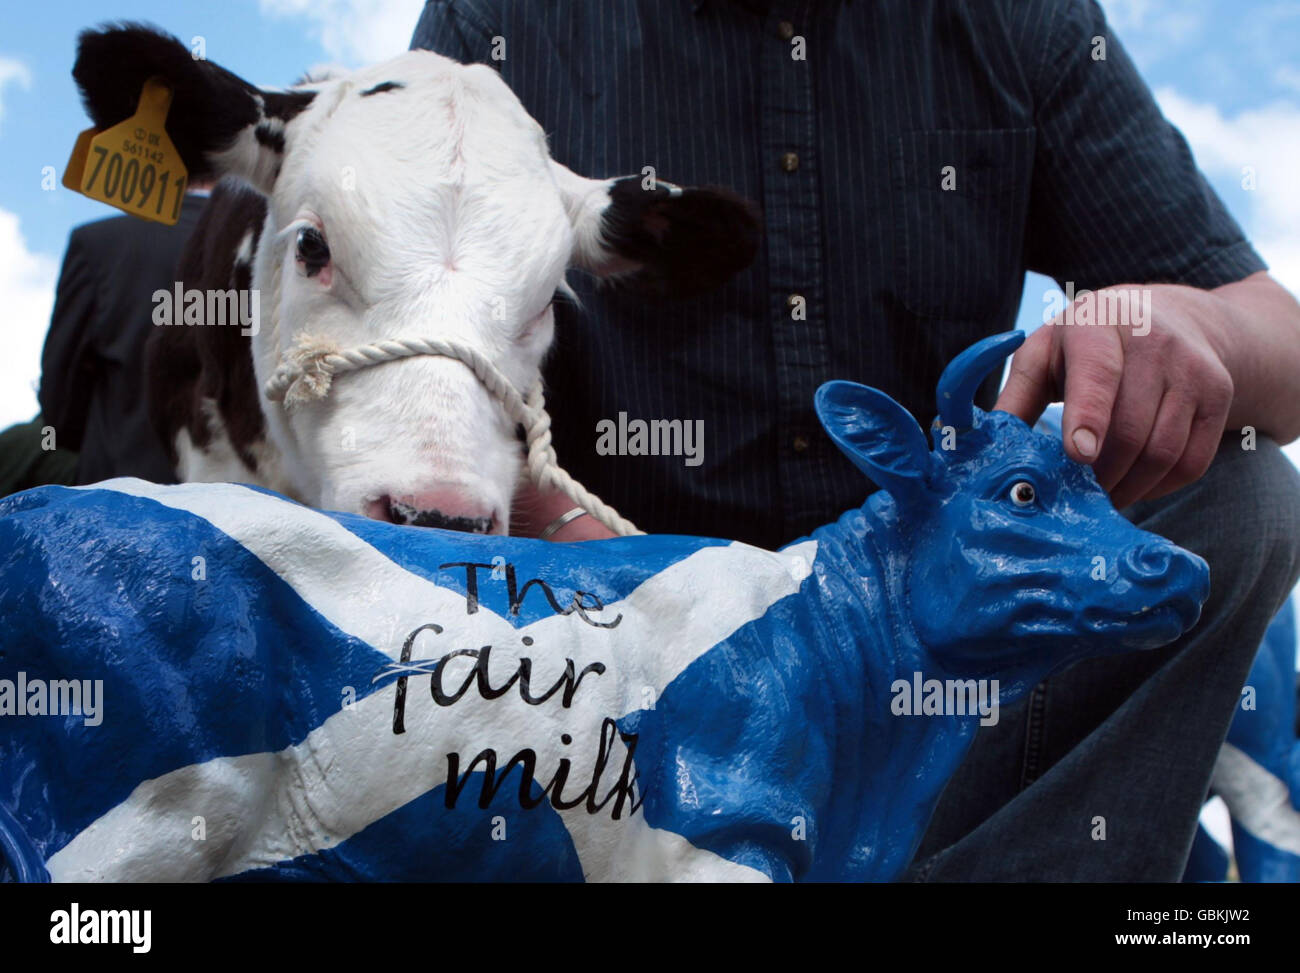 Les agriculteurs protestent contre la chute des prix du lait devant le Parlement écossais d'Édimbourg.Les prix ont chuté de 20% depuis le début de l'année, selon les leaders de l'industrie. Banque D'Images